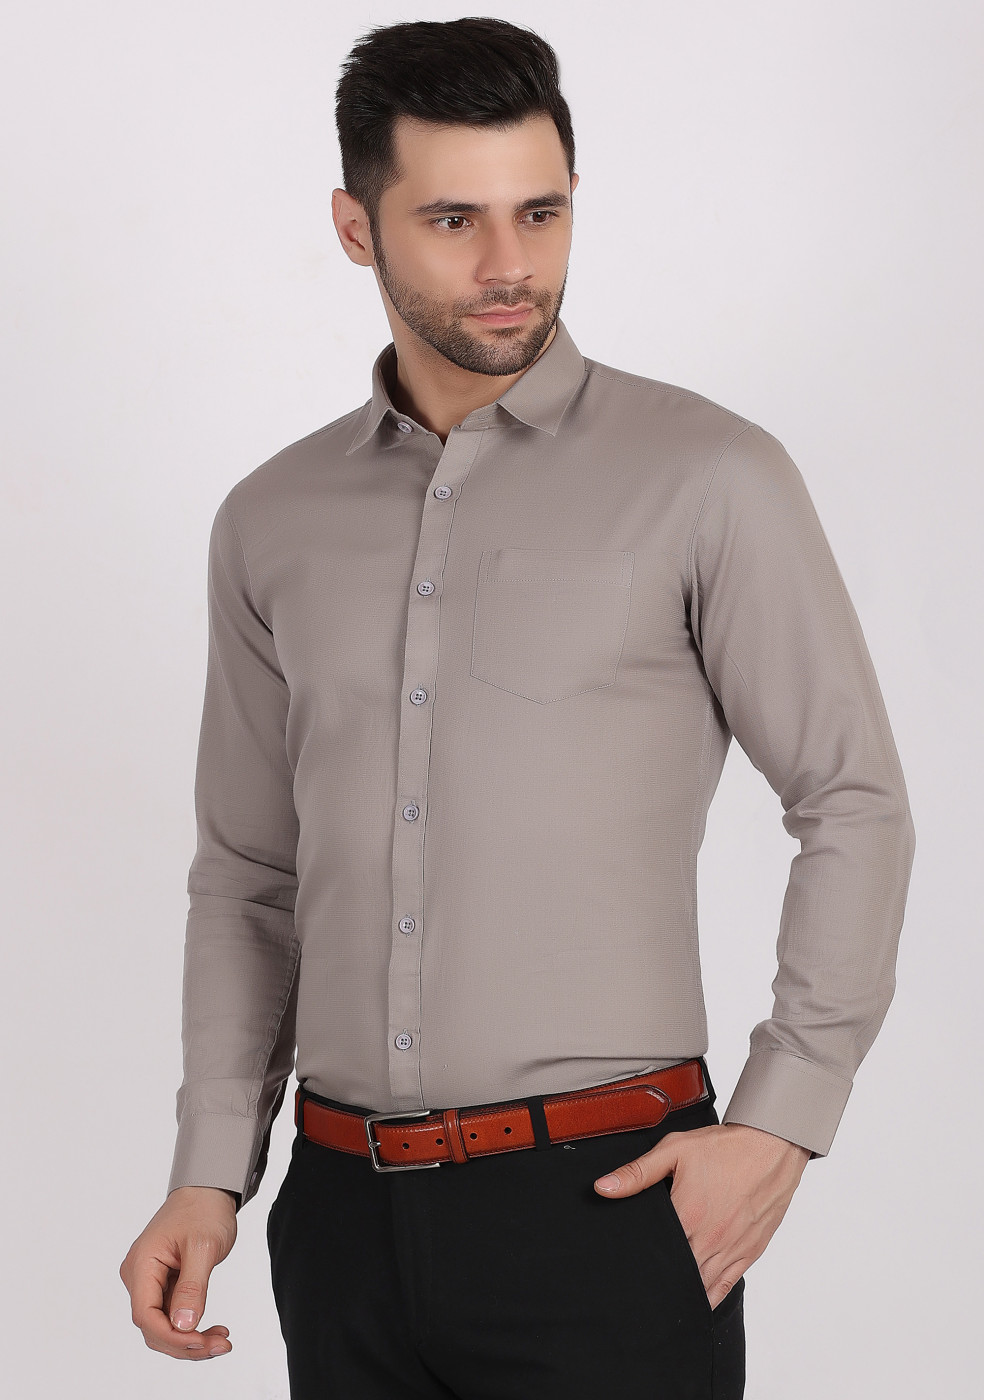 ASHTOM Plain Formal Cotton Shirt For Men